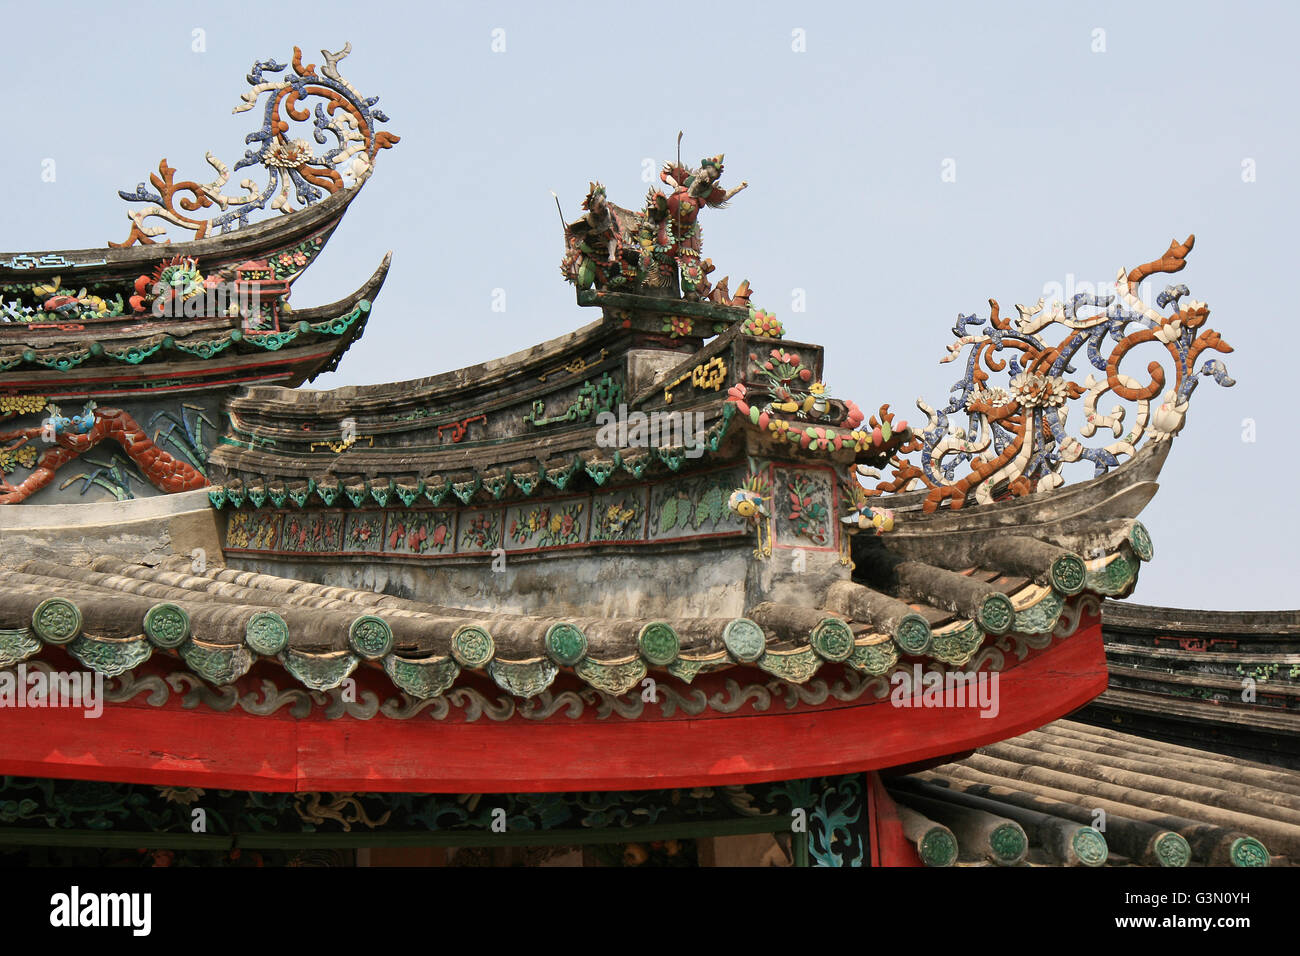 Detail der Dekoration des Daches eines chinesischen Pavillons in Hoi an (Vietnam). Stockfoto